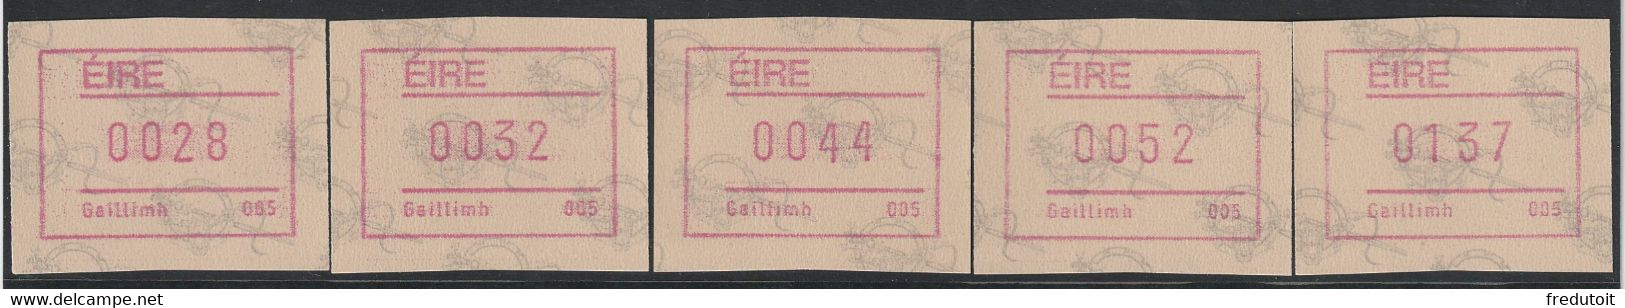 IRLANDE - Timbres Distributeurs / FRAMA  ATM - N°4** (1992) Gaillimh 005 - Frankeervignetten (Frama)